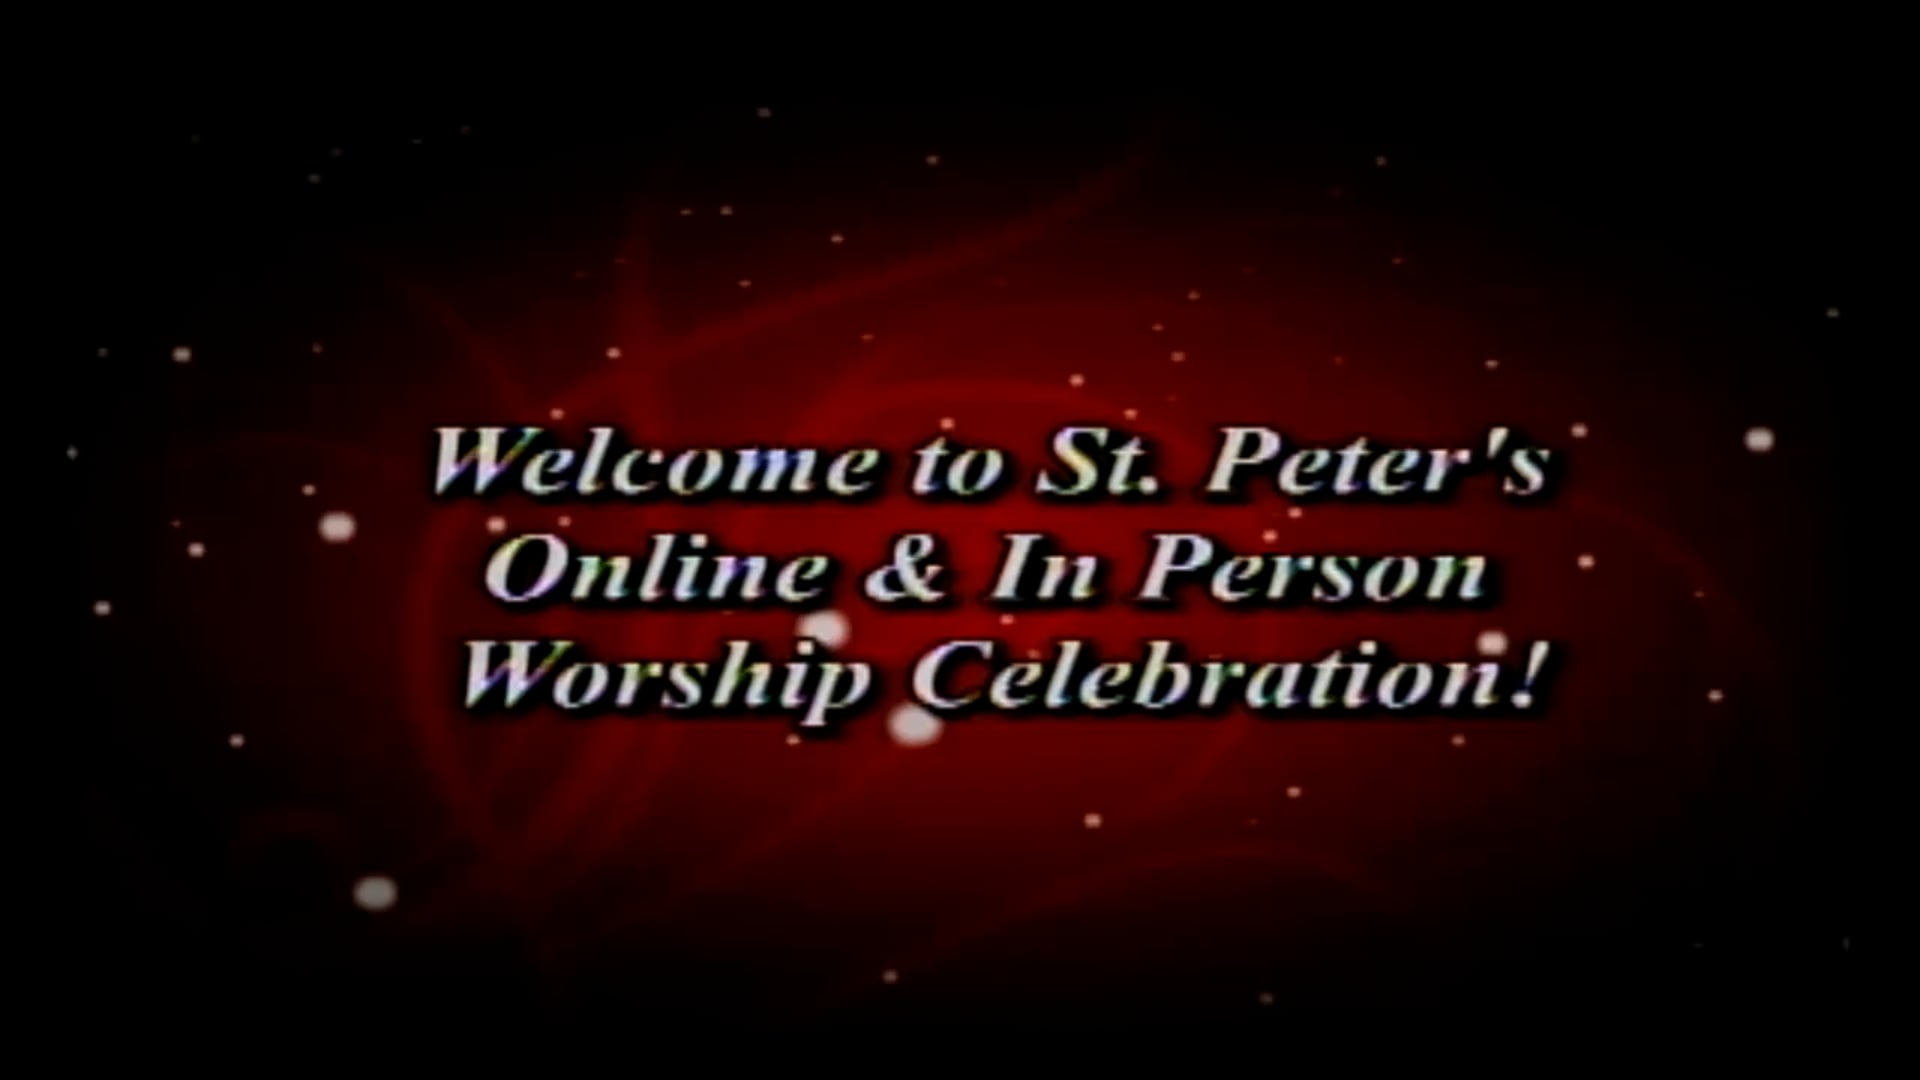 Worship Celebration 3-27-2022